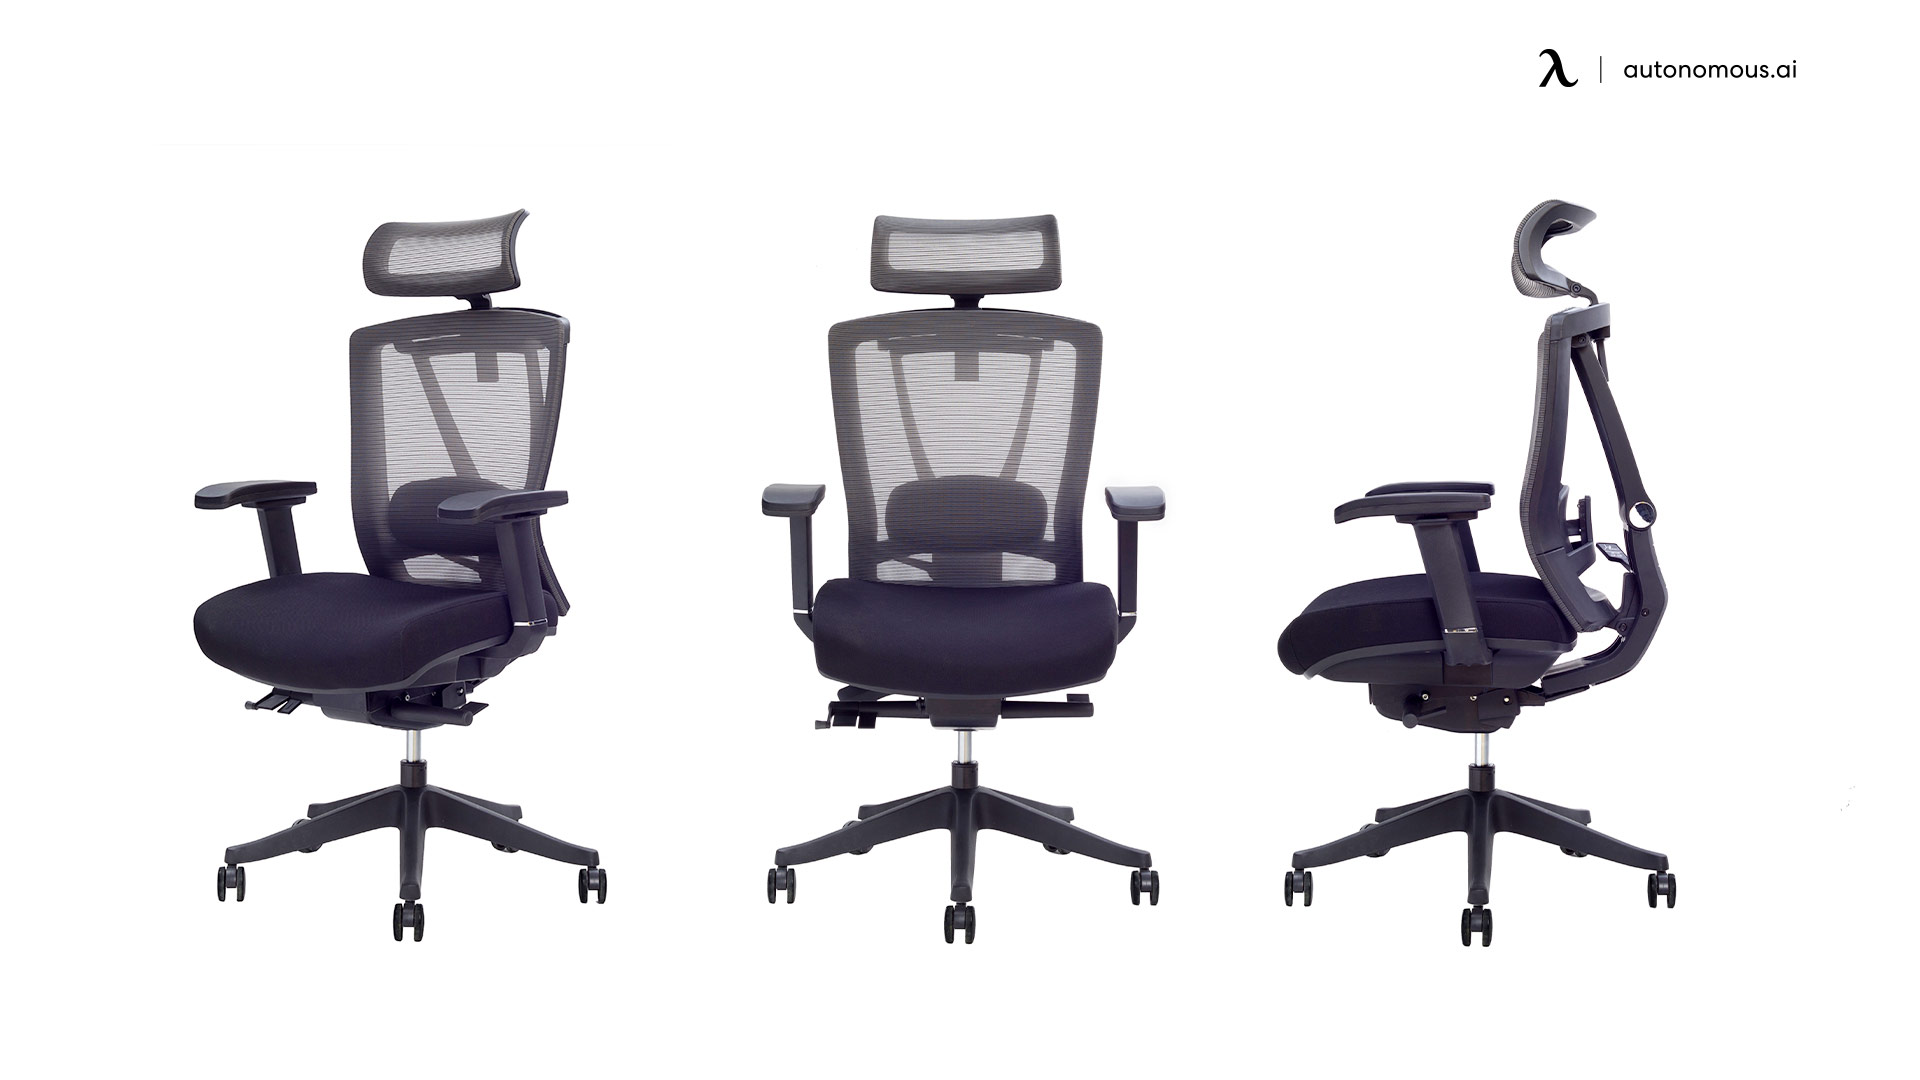 ErgoChair Pro mesh office chair with a headrest